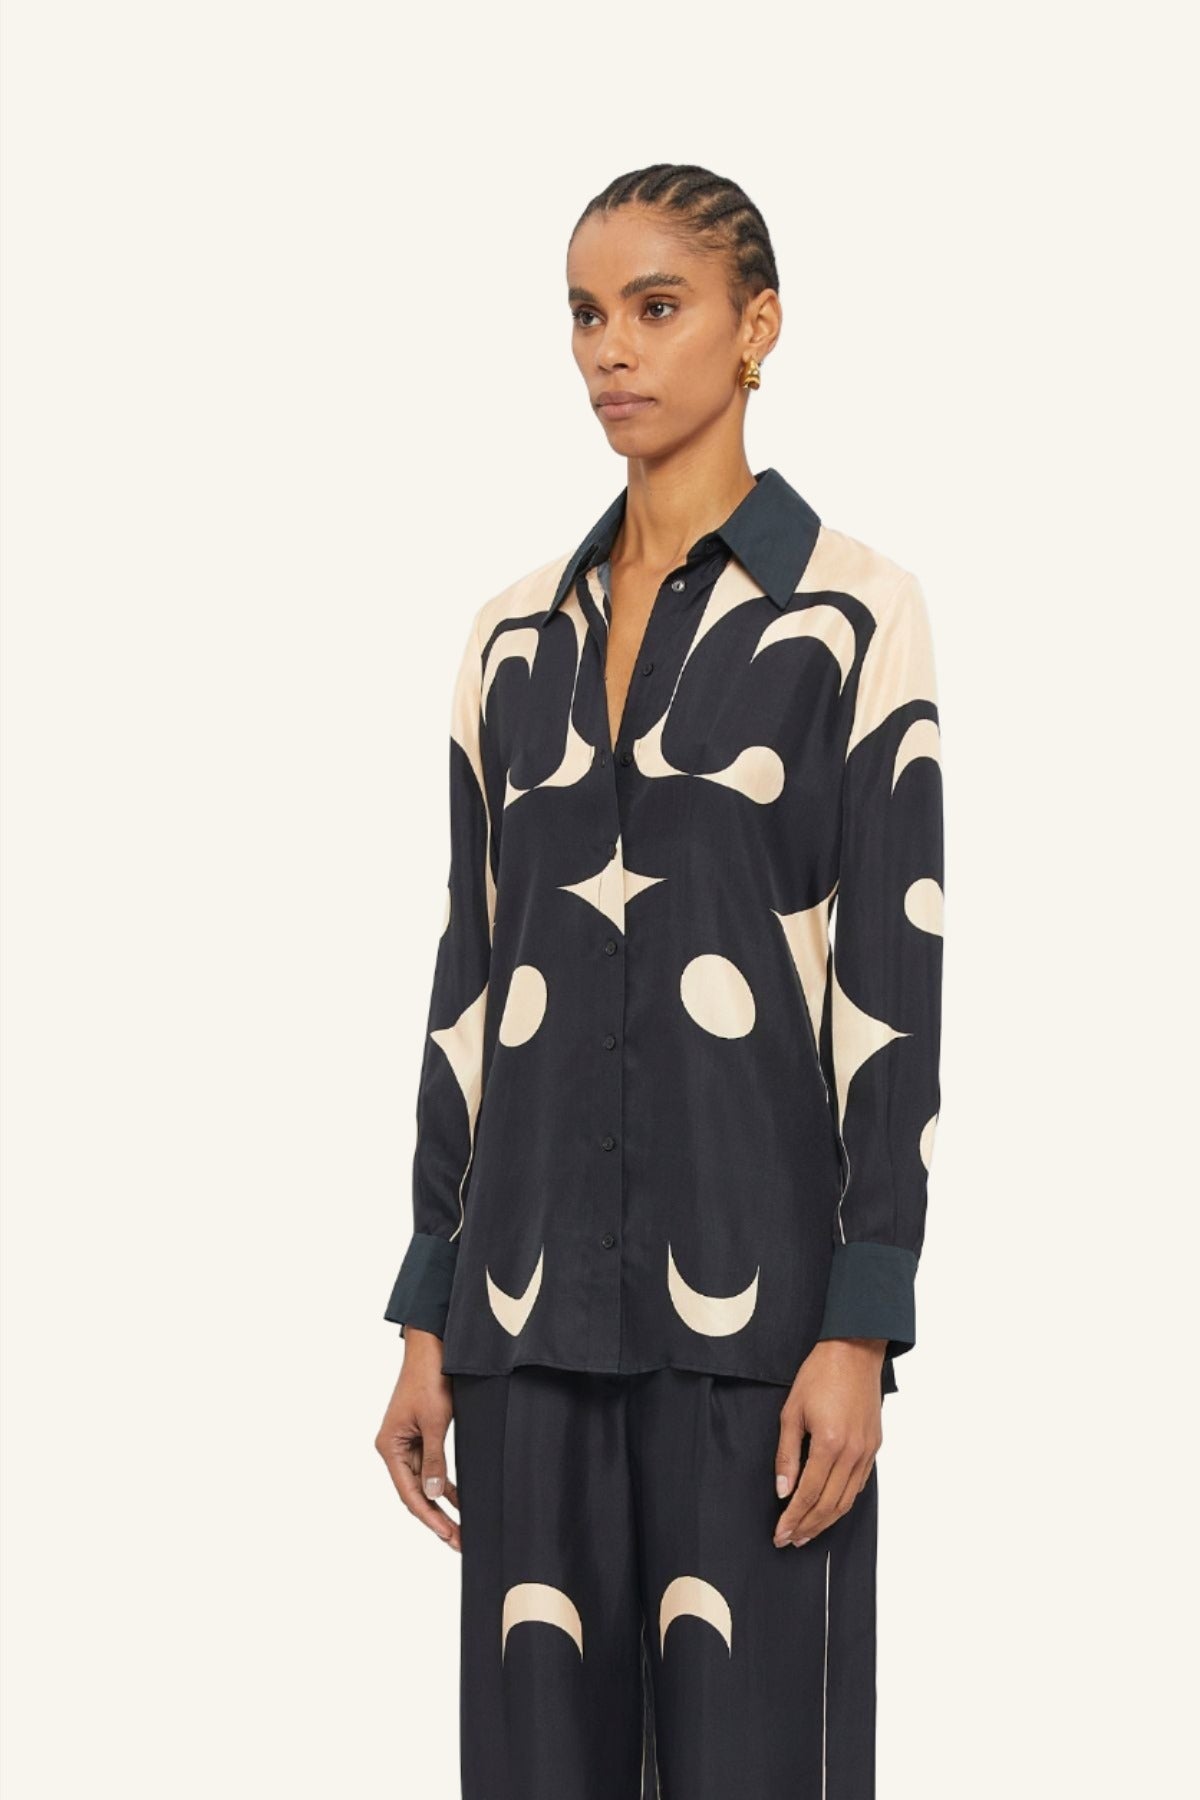 Australian women's designer Black and Cream Deco printed long sleeve Lucid blouse